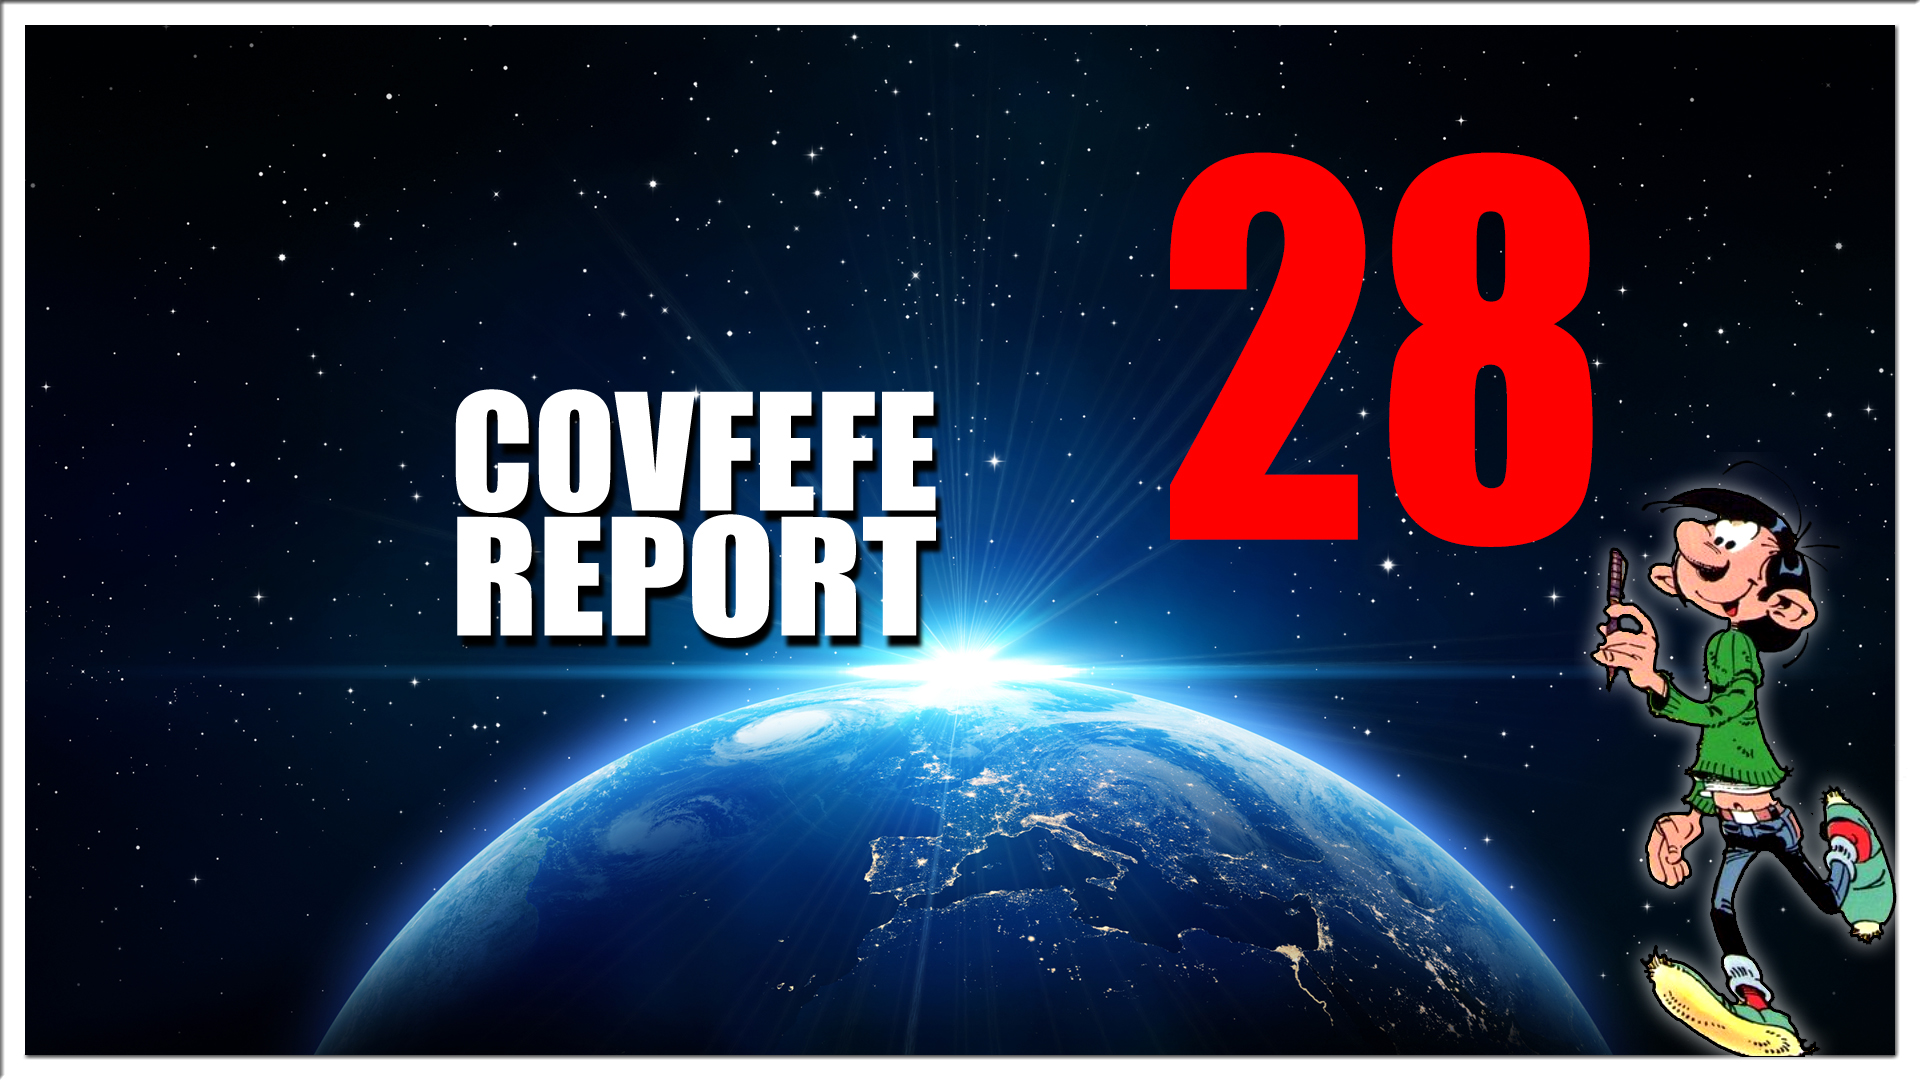 Covfefe Report 28. Q team, Impeachment, Leerlingen naar gerechtshof